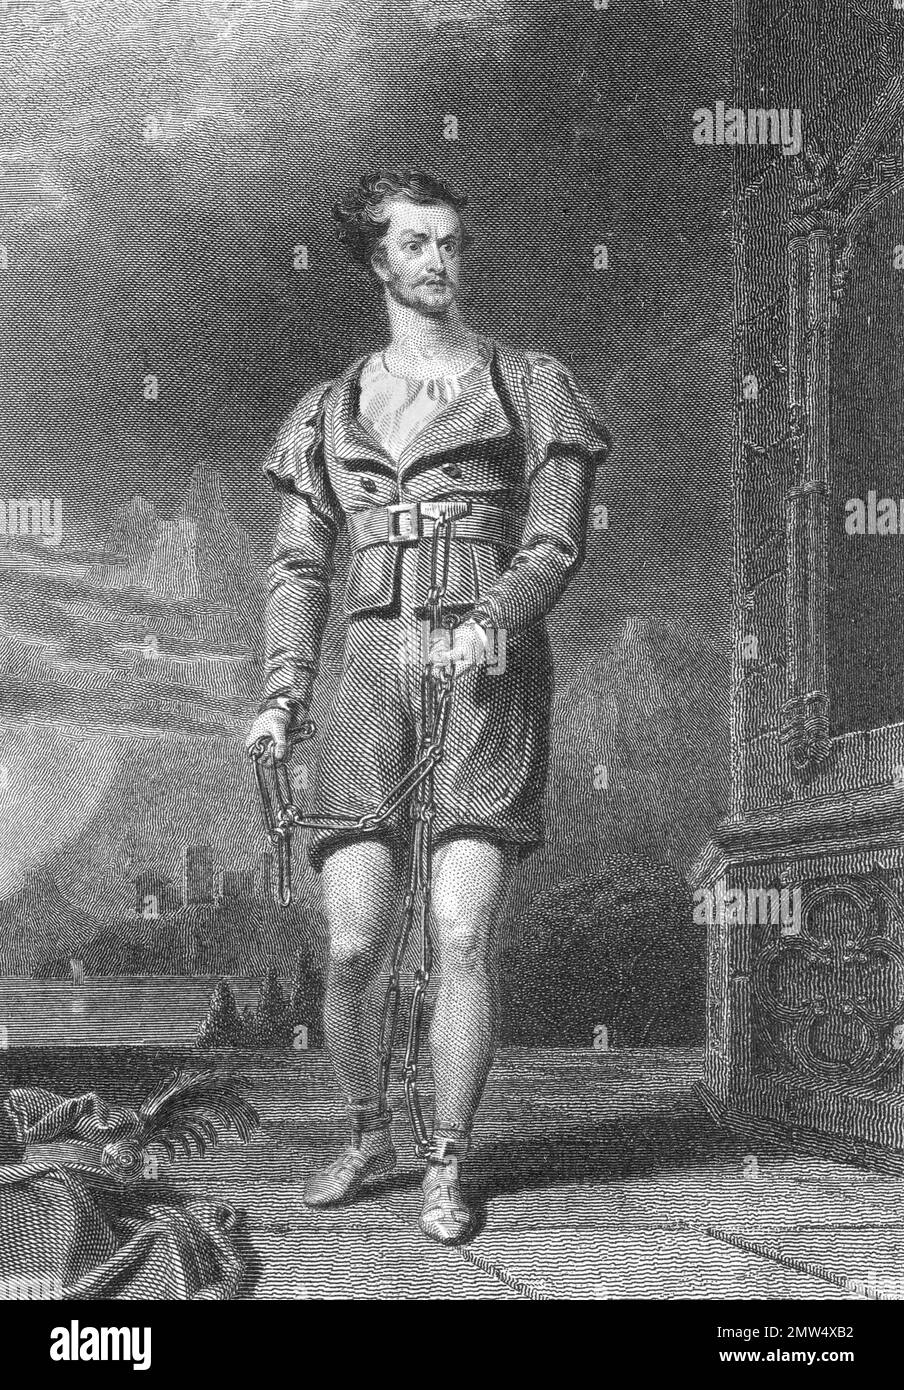 William Tell. Gravure de William C. Macready comme William Tell basée sur une photo d'Asher B Durand, c. 1830. William Tell était un héros populaire en Suisse au 14th siècle. Banque D'Images